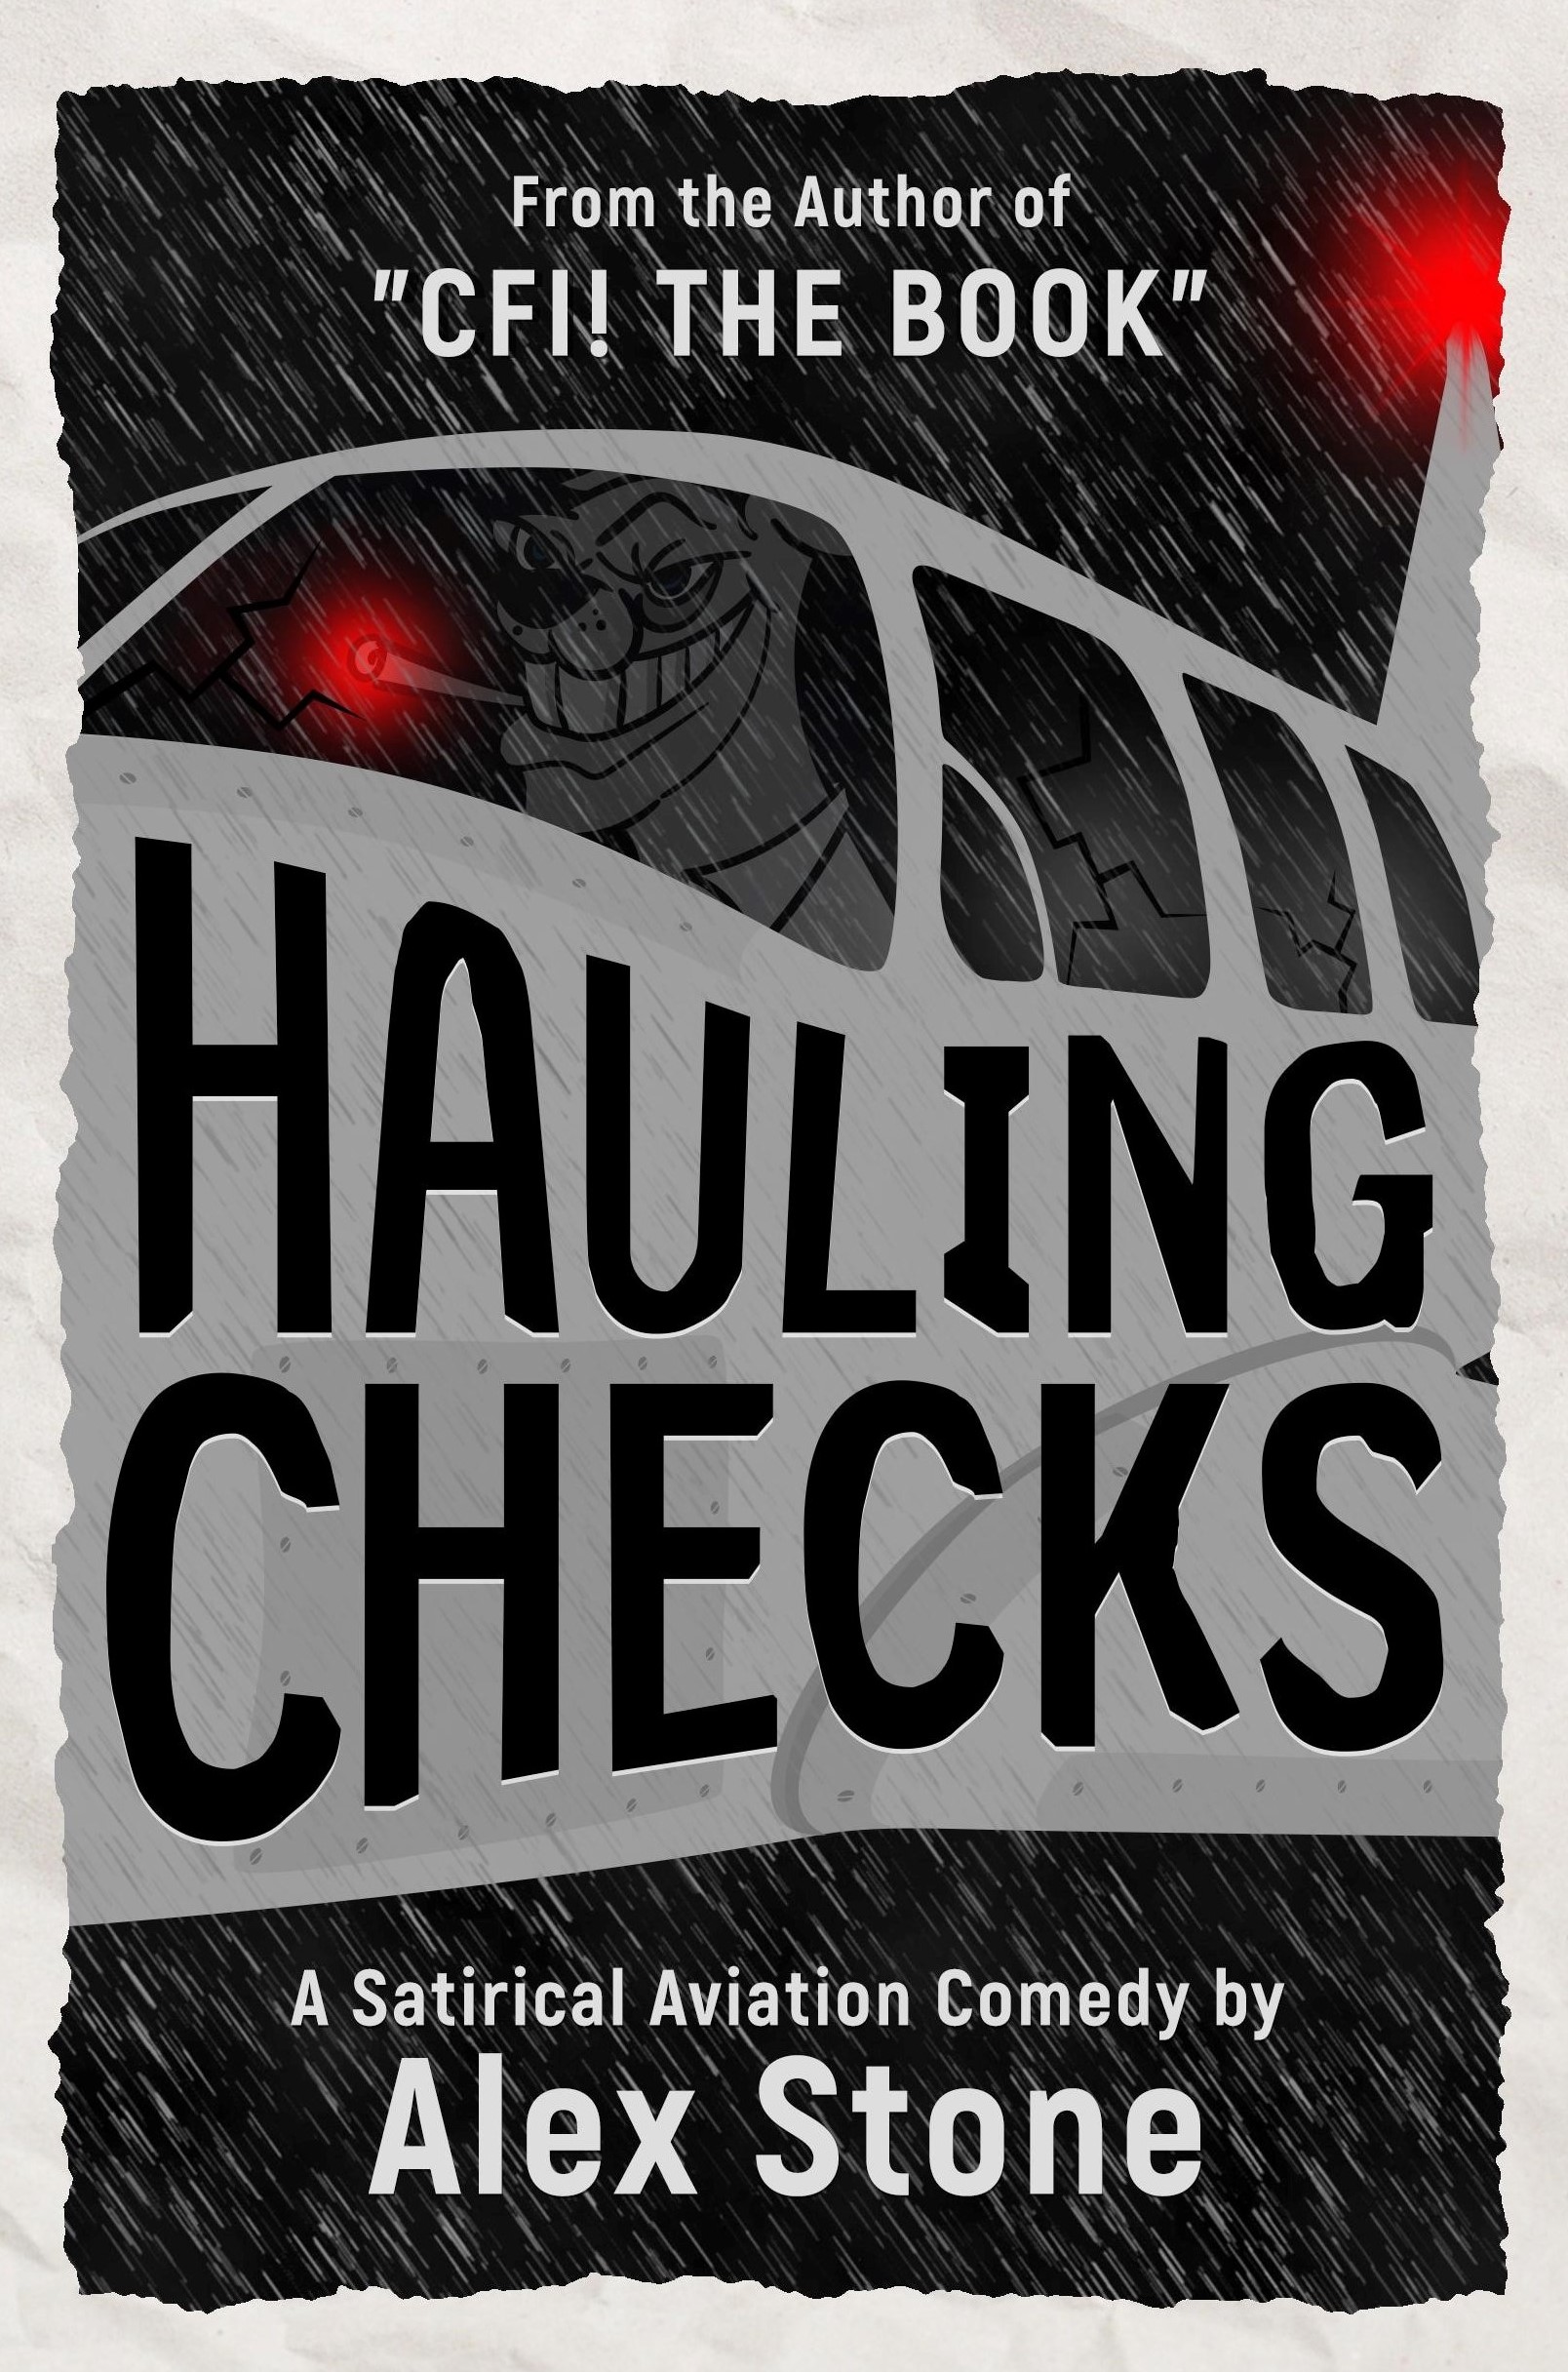 Hauling Checks, Aviation Comedy by Alex Stone